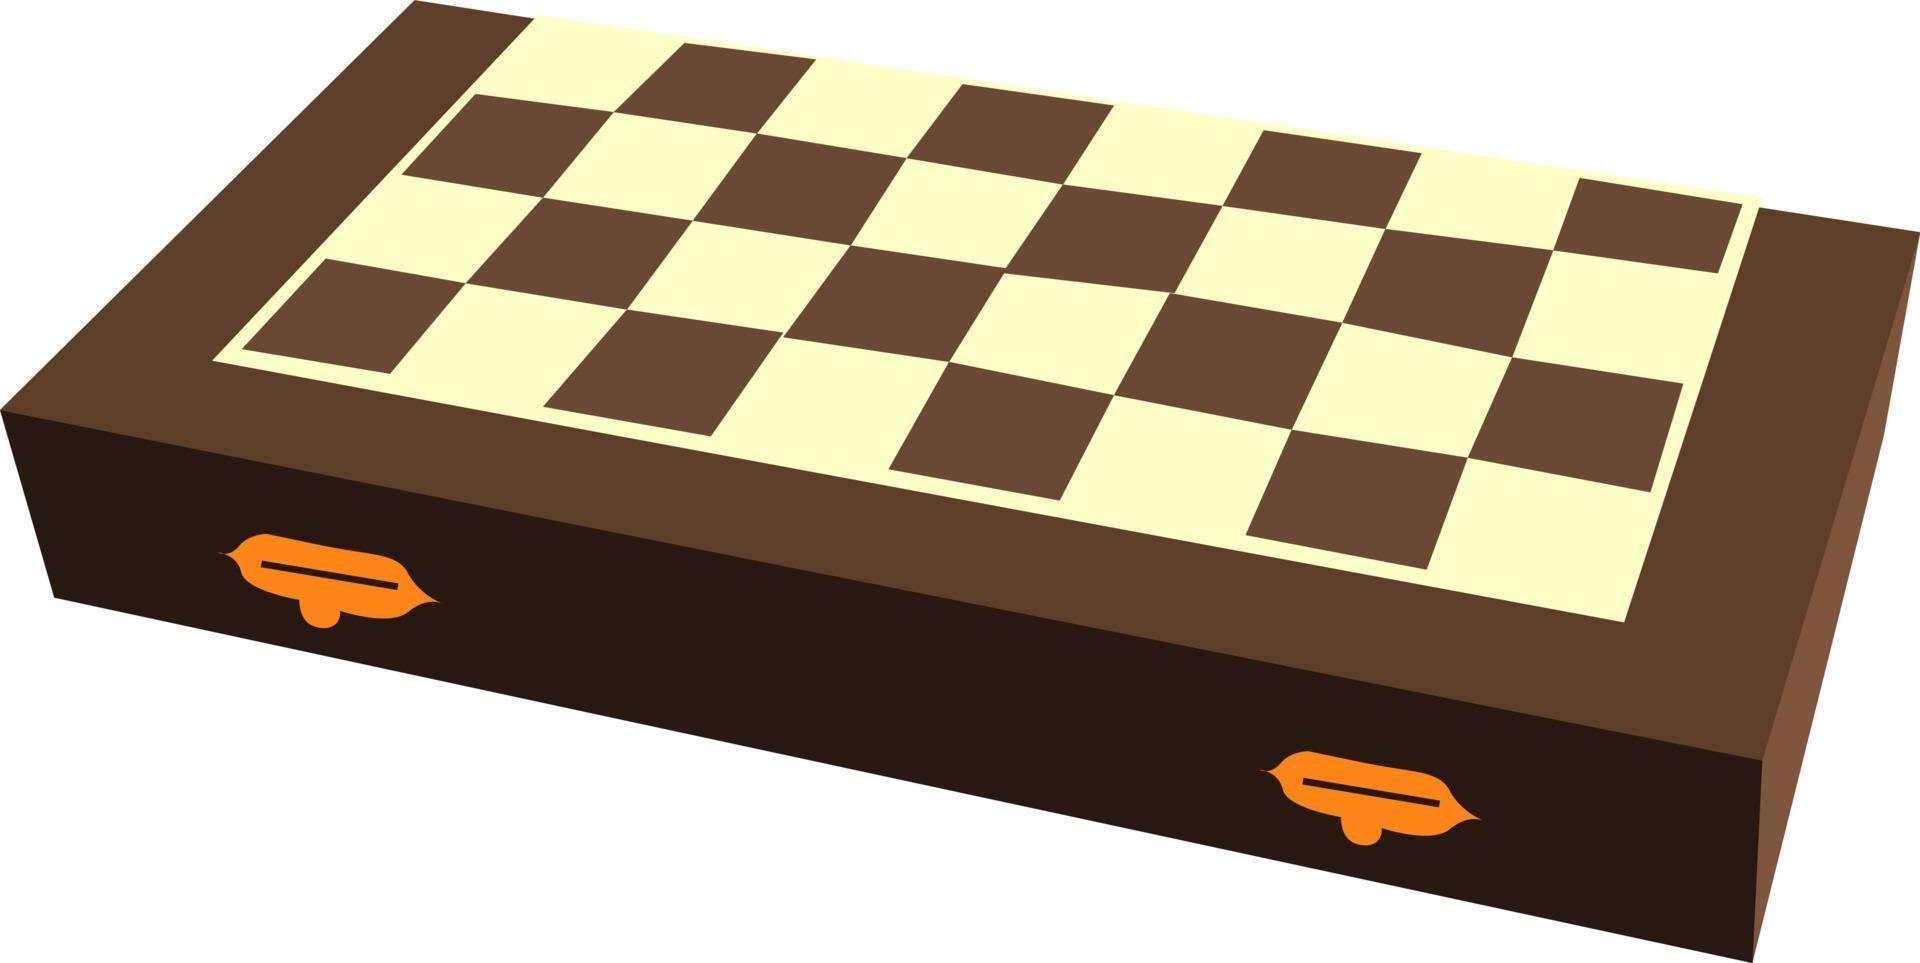 tablero de ajedrez, ilustración, vector sobre fondo blanco.